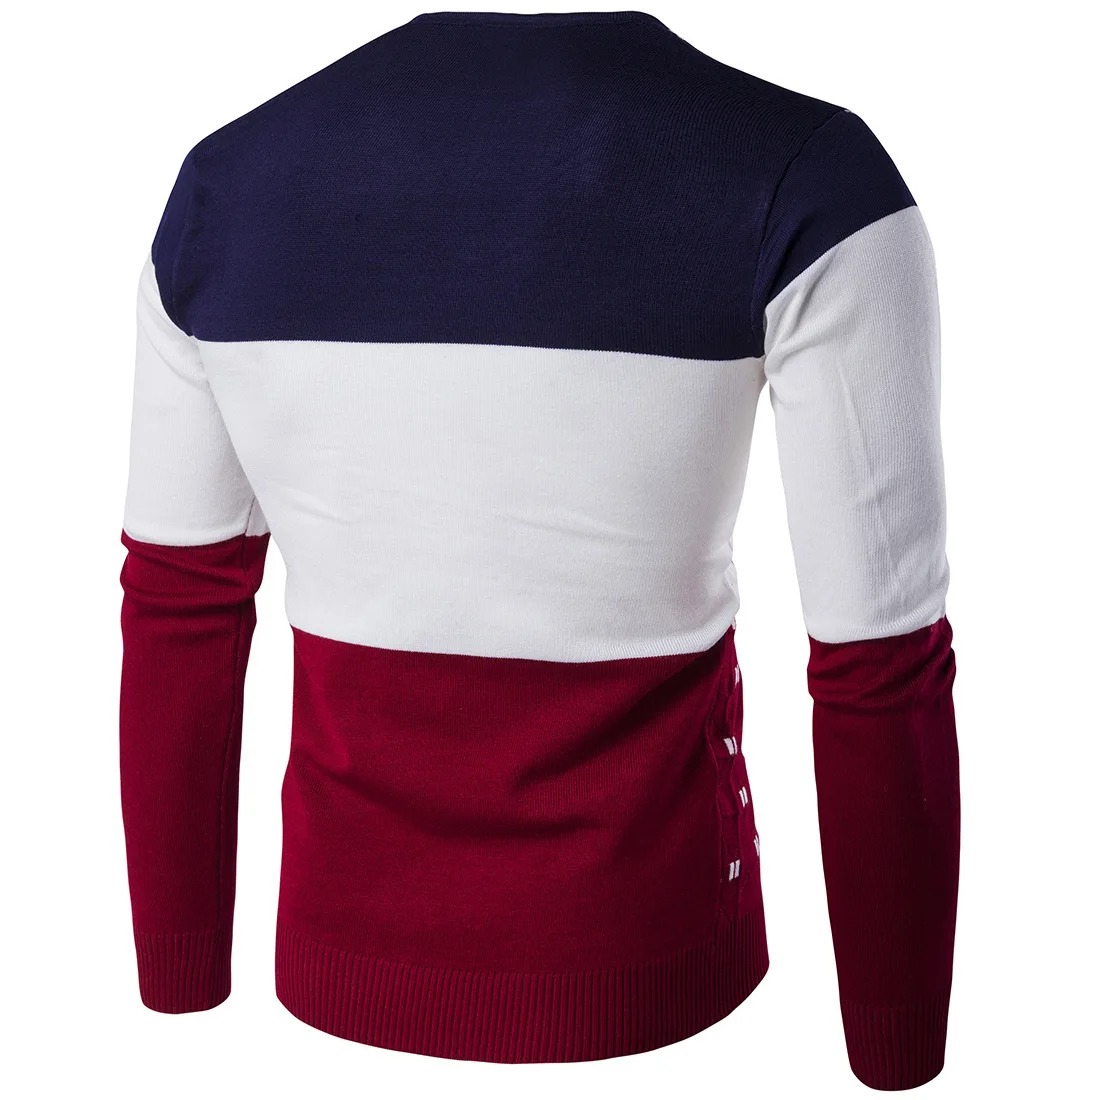 5 цветов полосатый свитер Для мужчин теплые с v-образным вырезом и длинным рукавом Зимняя Одежда для мужской моды Slim Fit печати пуловер свитер